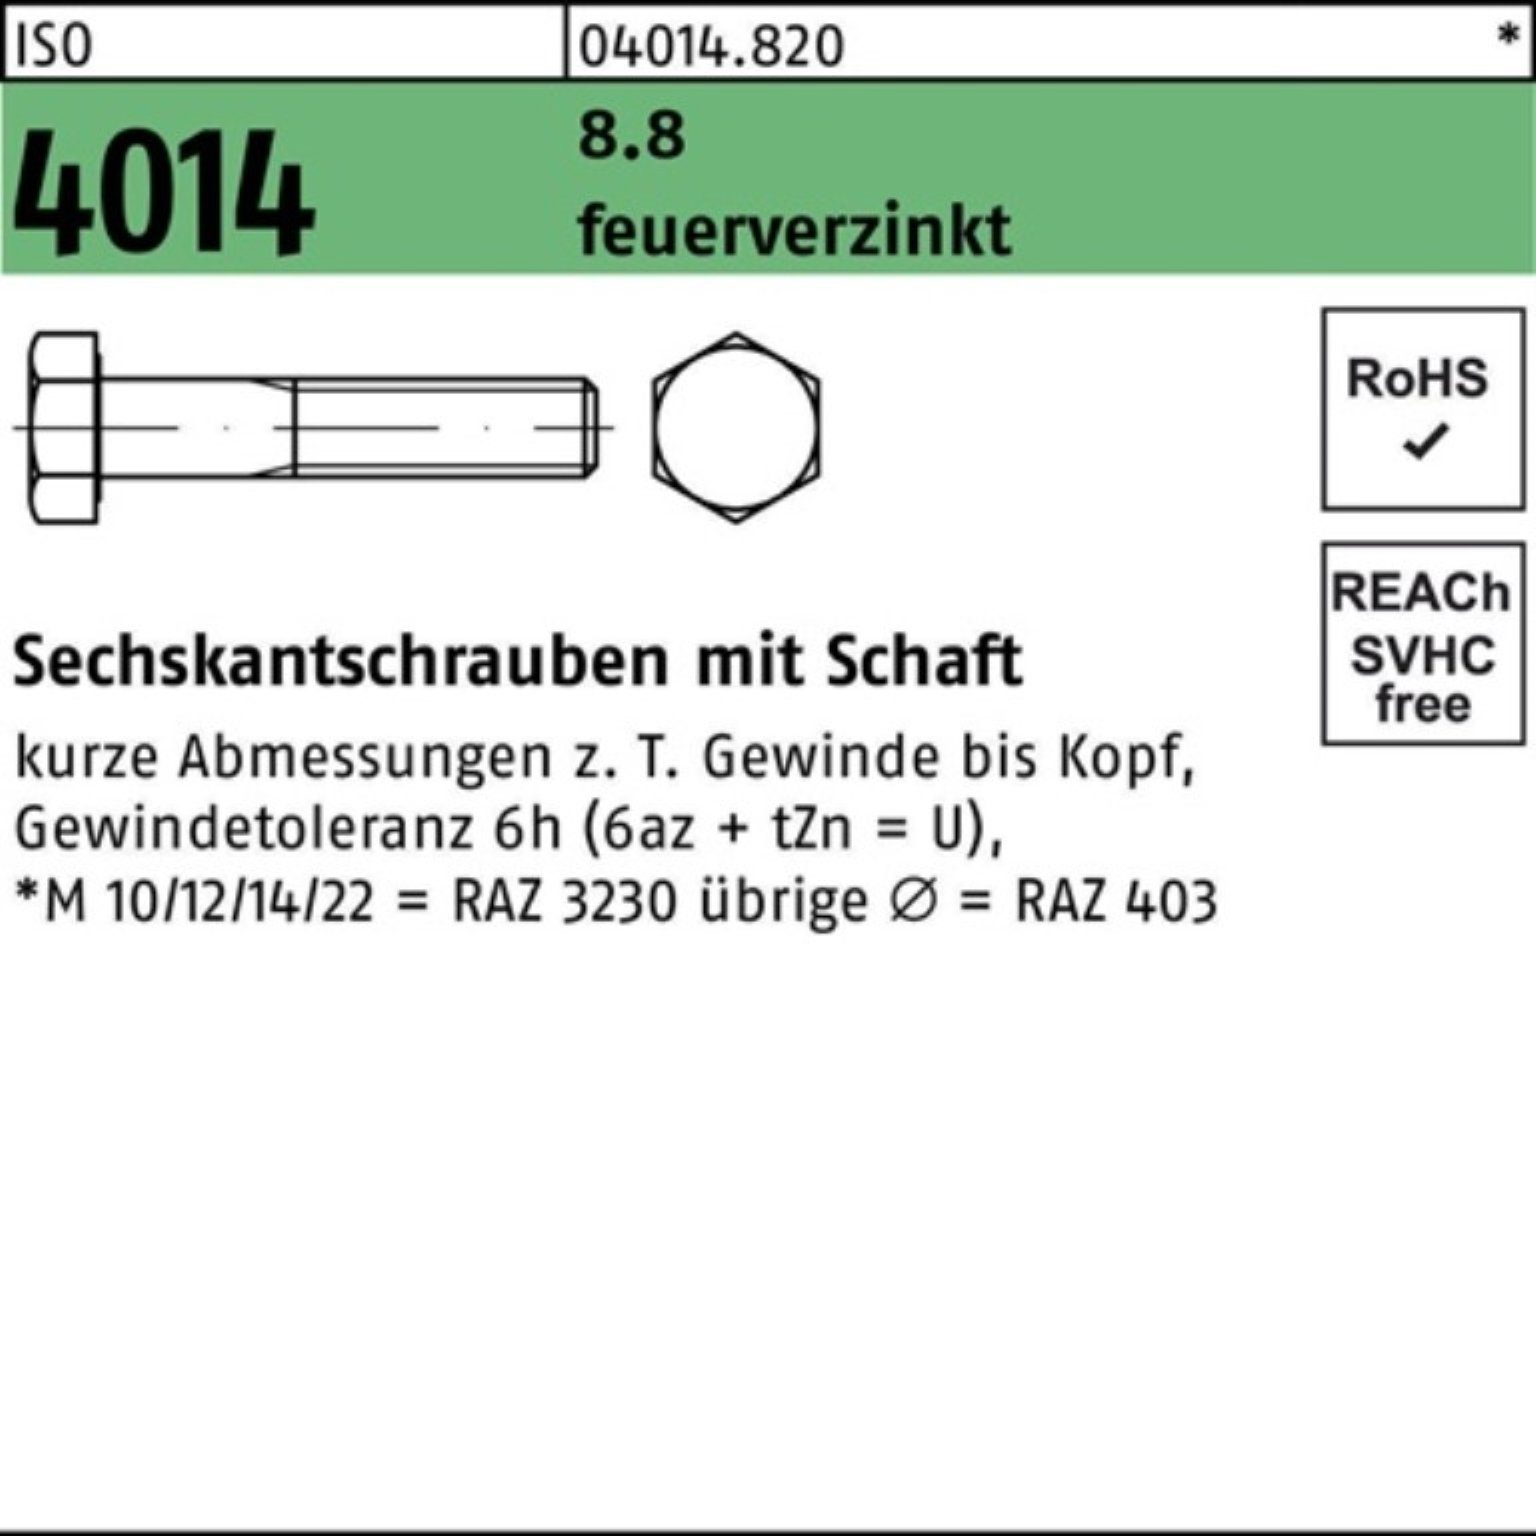 Bufab Sechskantschraube 100er Pack Sechskantschraube ISO 4014 Schaft M30x 240 8.8 feuerverz. 1